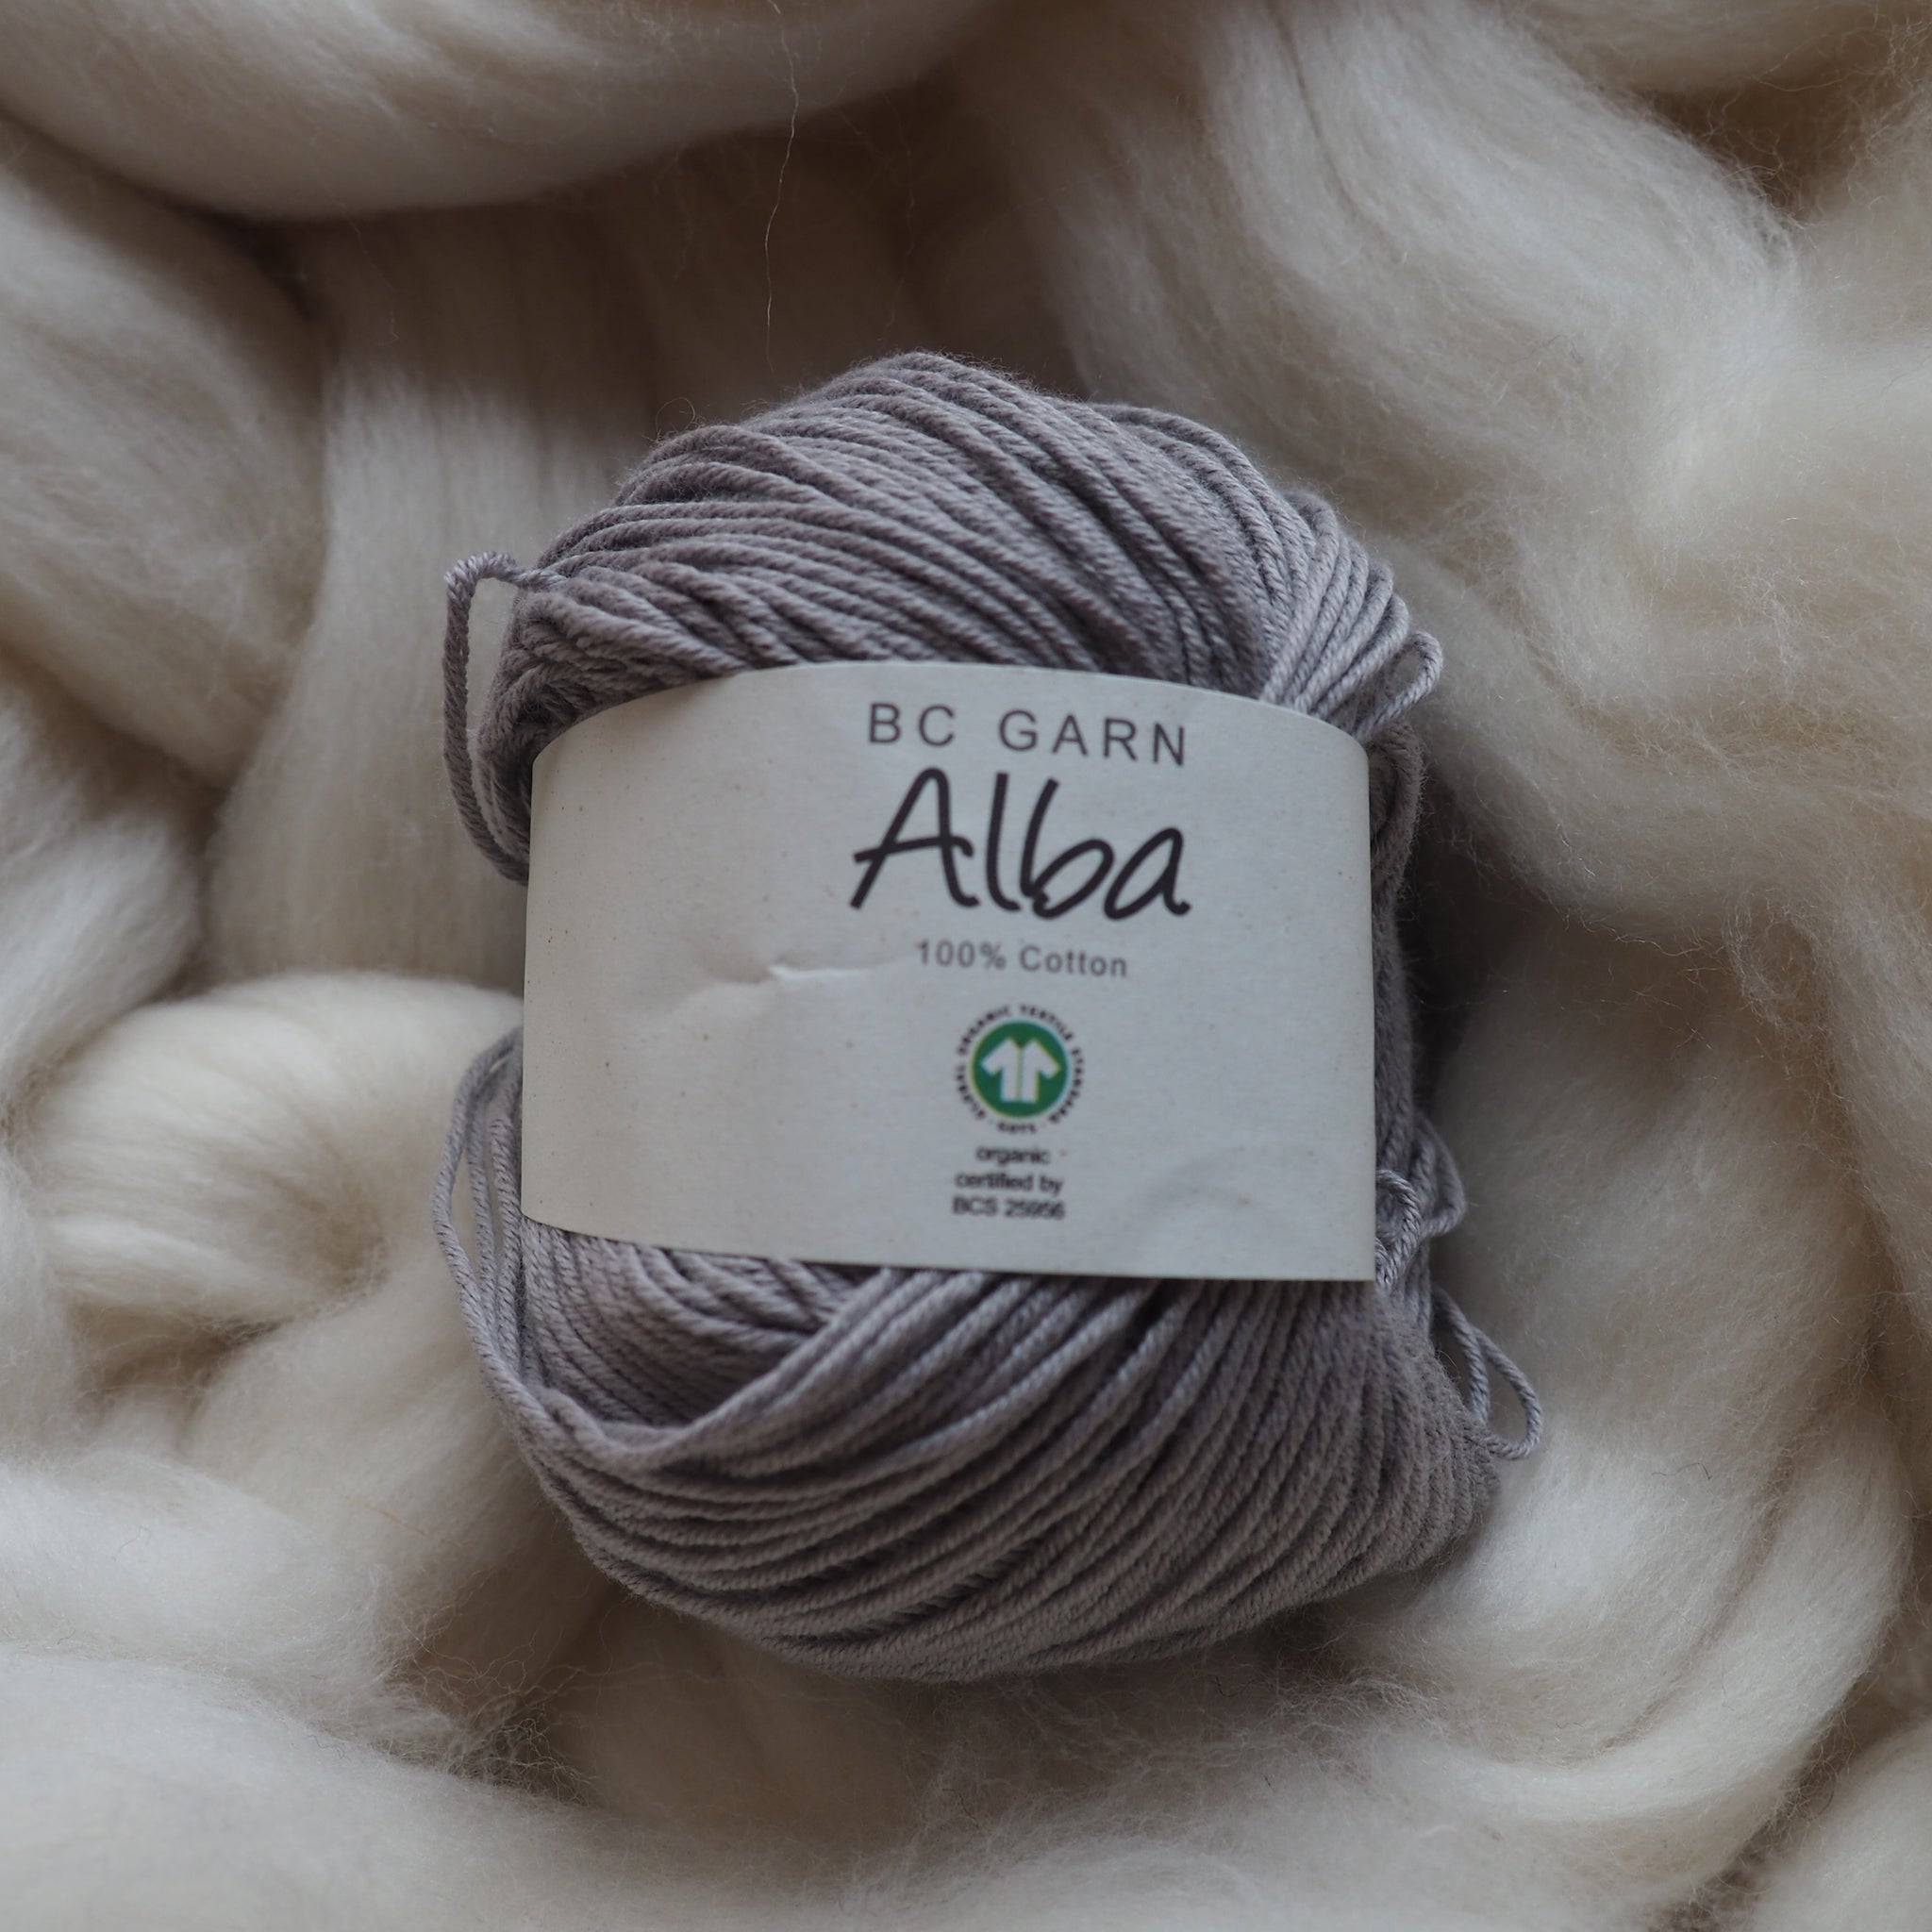 Coton gris argent - Alba | 50 gr